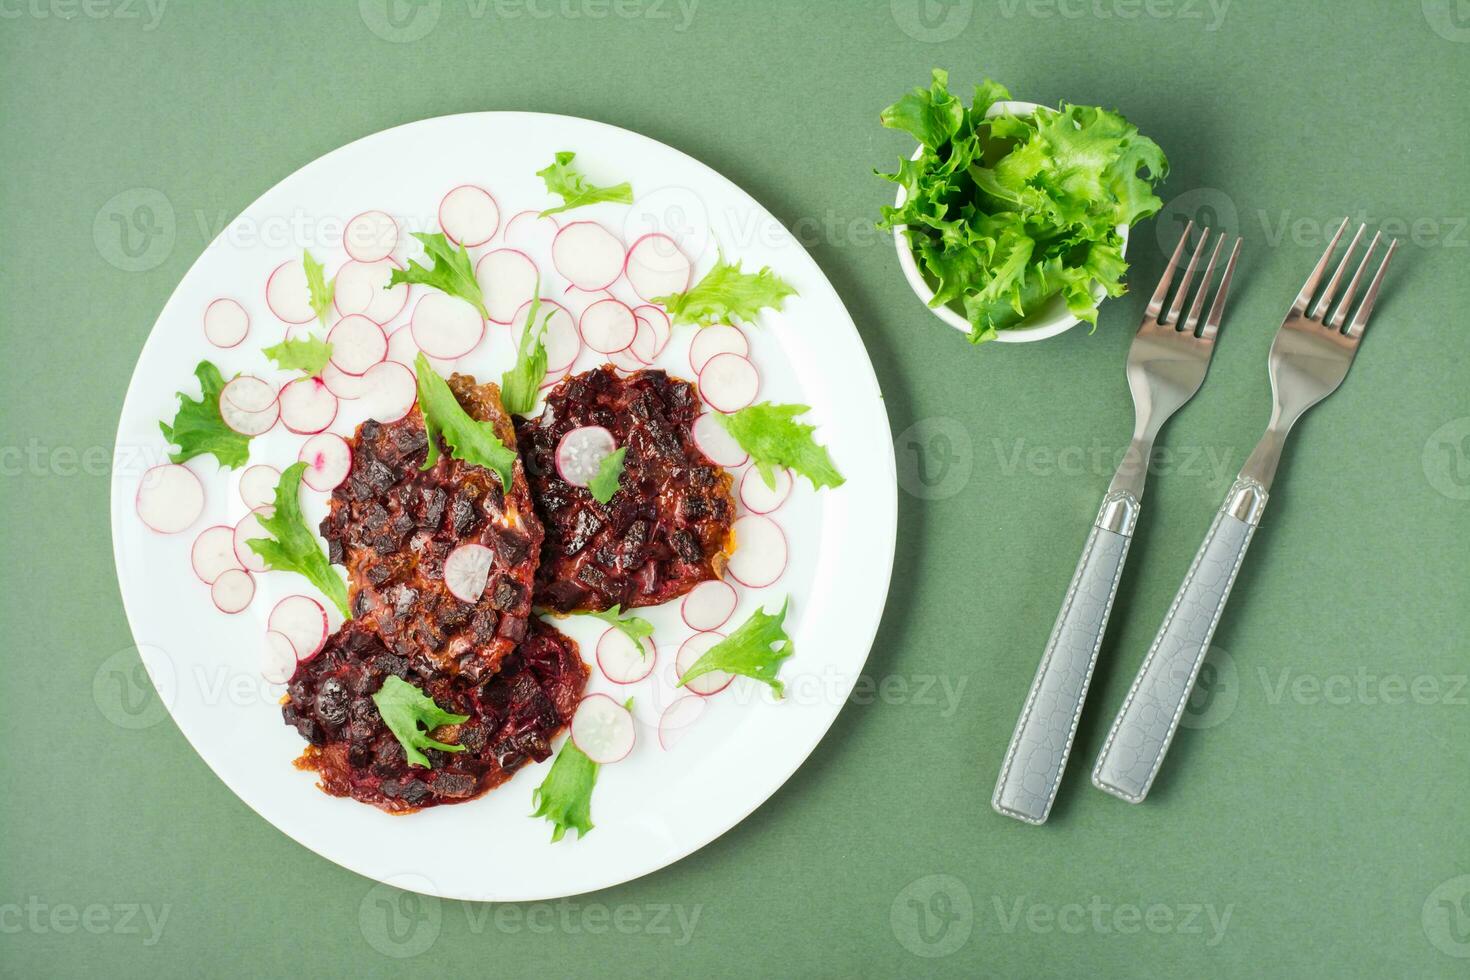 vegetal dieta Comida. beterraba bife, rabanete e friso salada folhas em uma prato e garfos em uma verde fundo foto